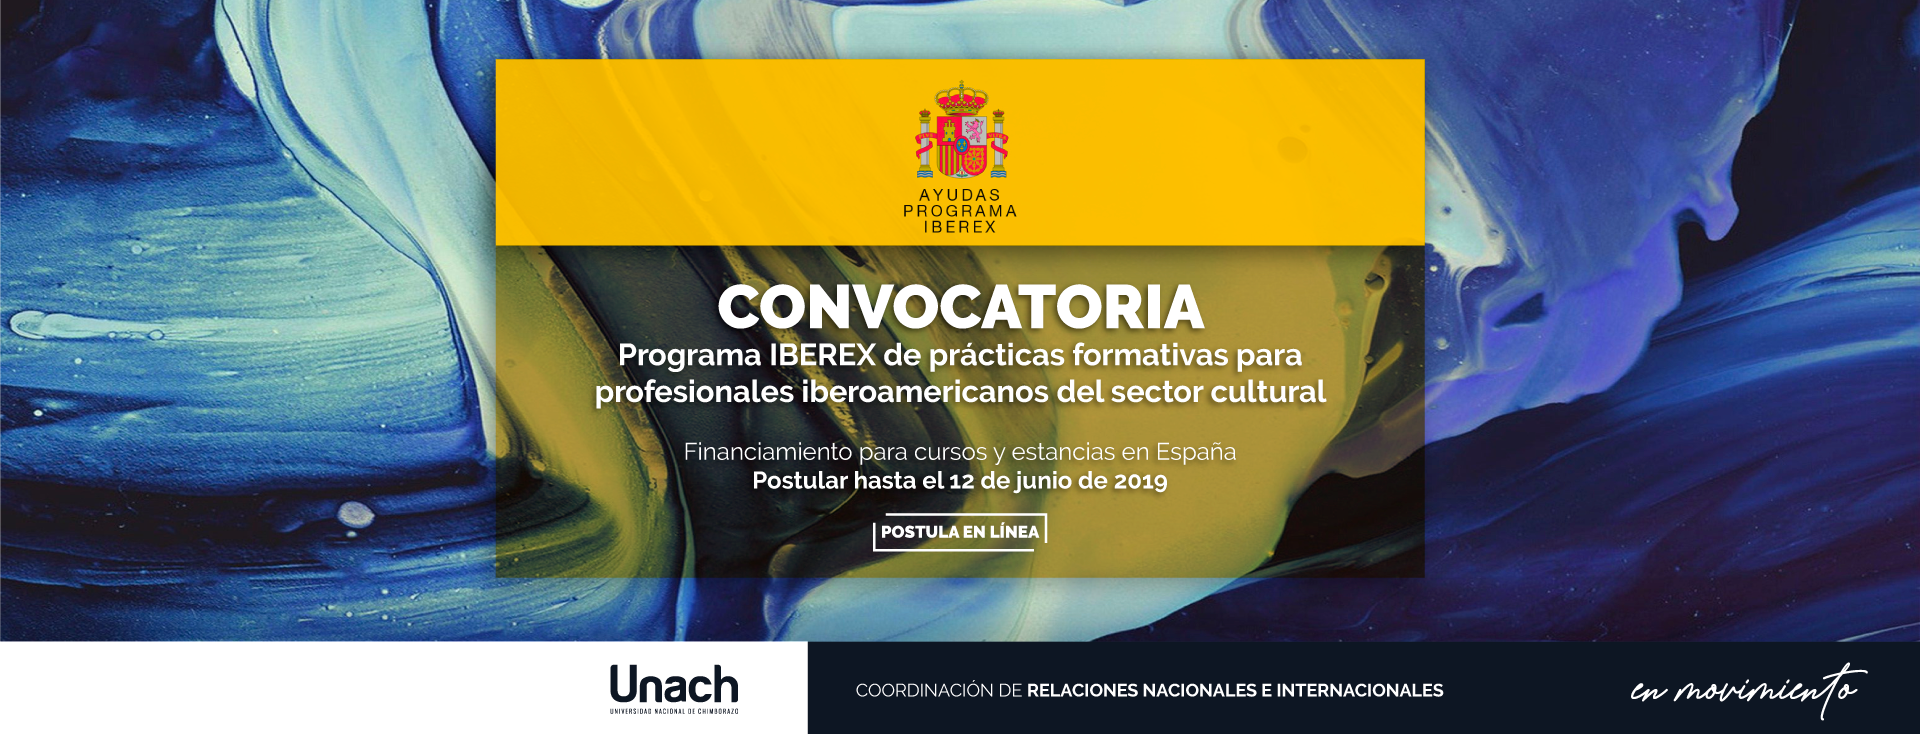 CONVOCATORIA PROGRAMA IBEREX DE PRÁCTICAS FORMATIVAS PARA PROFESIONALES IBEROAMÉRICANOS DEL SECTOR CULTURAL